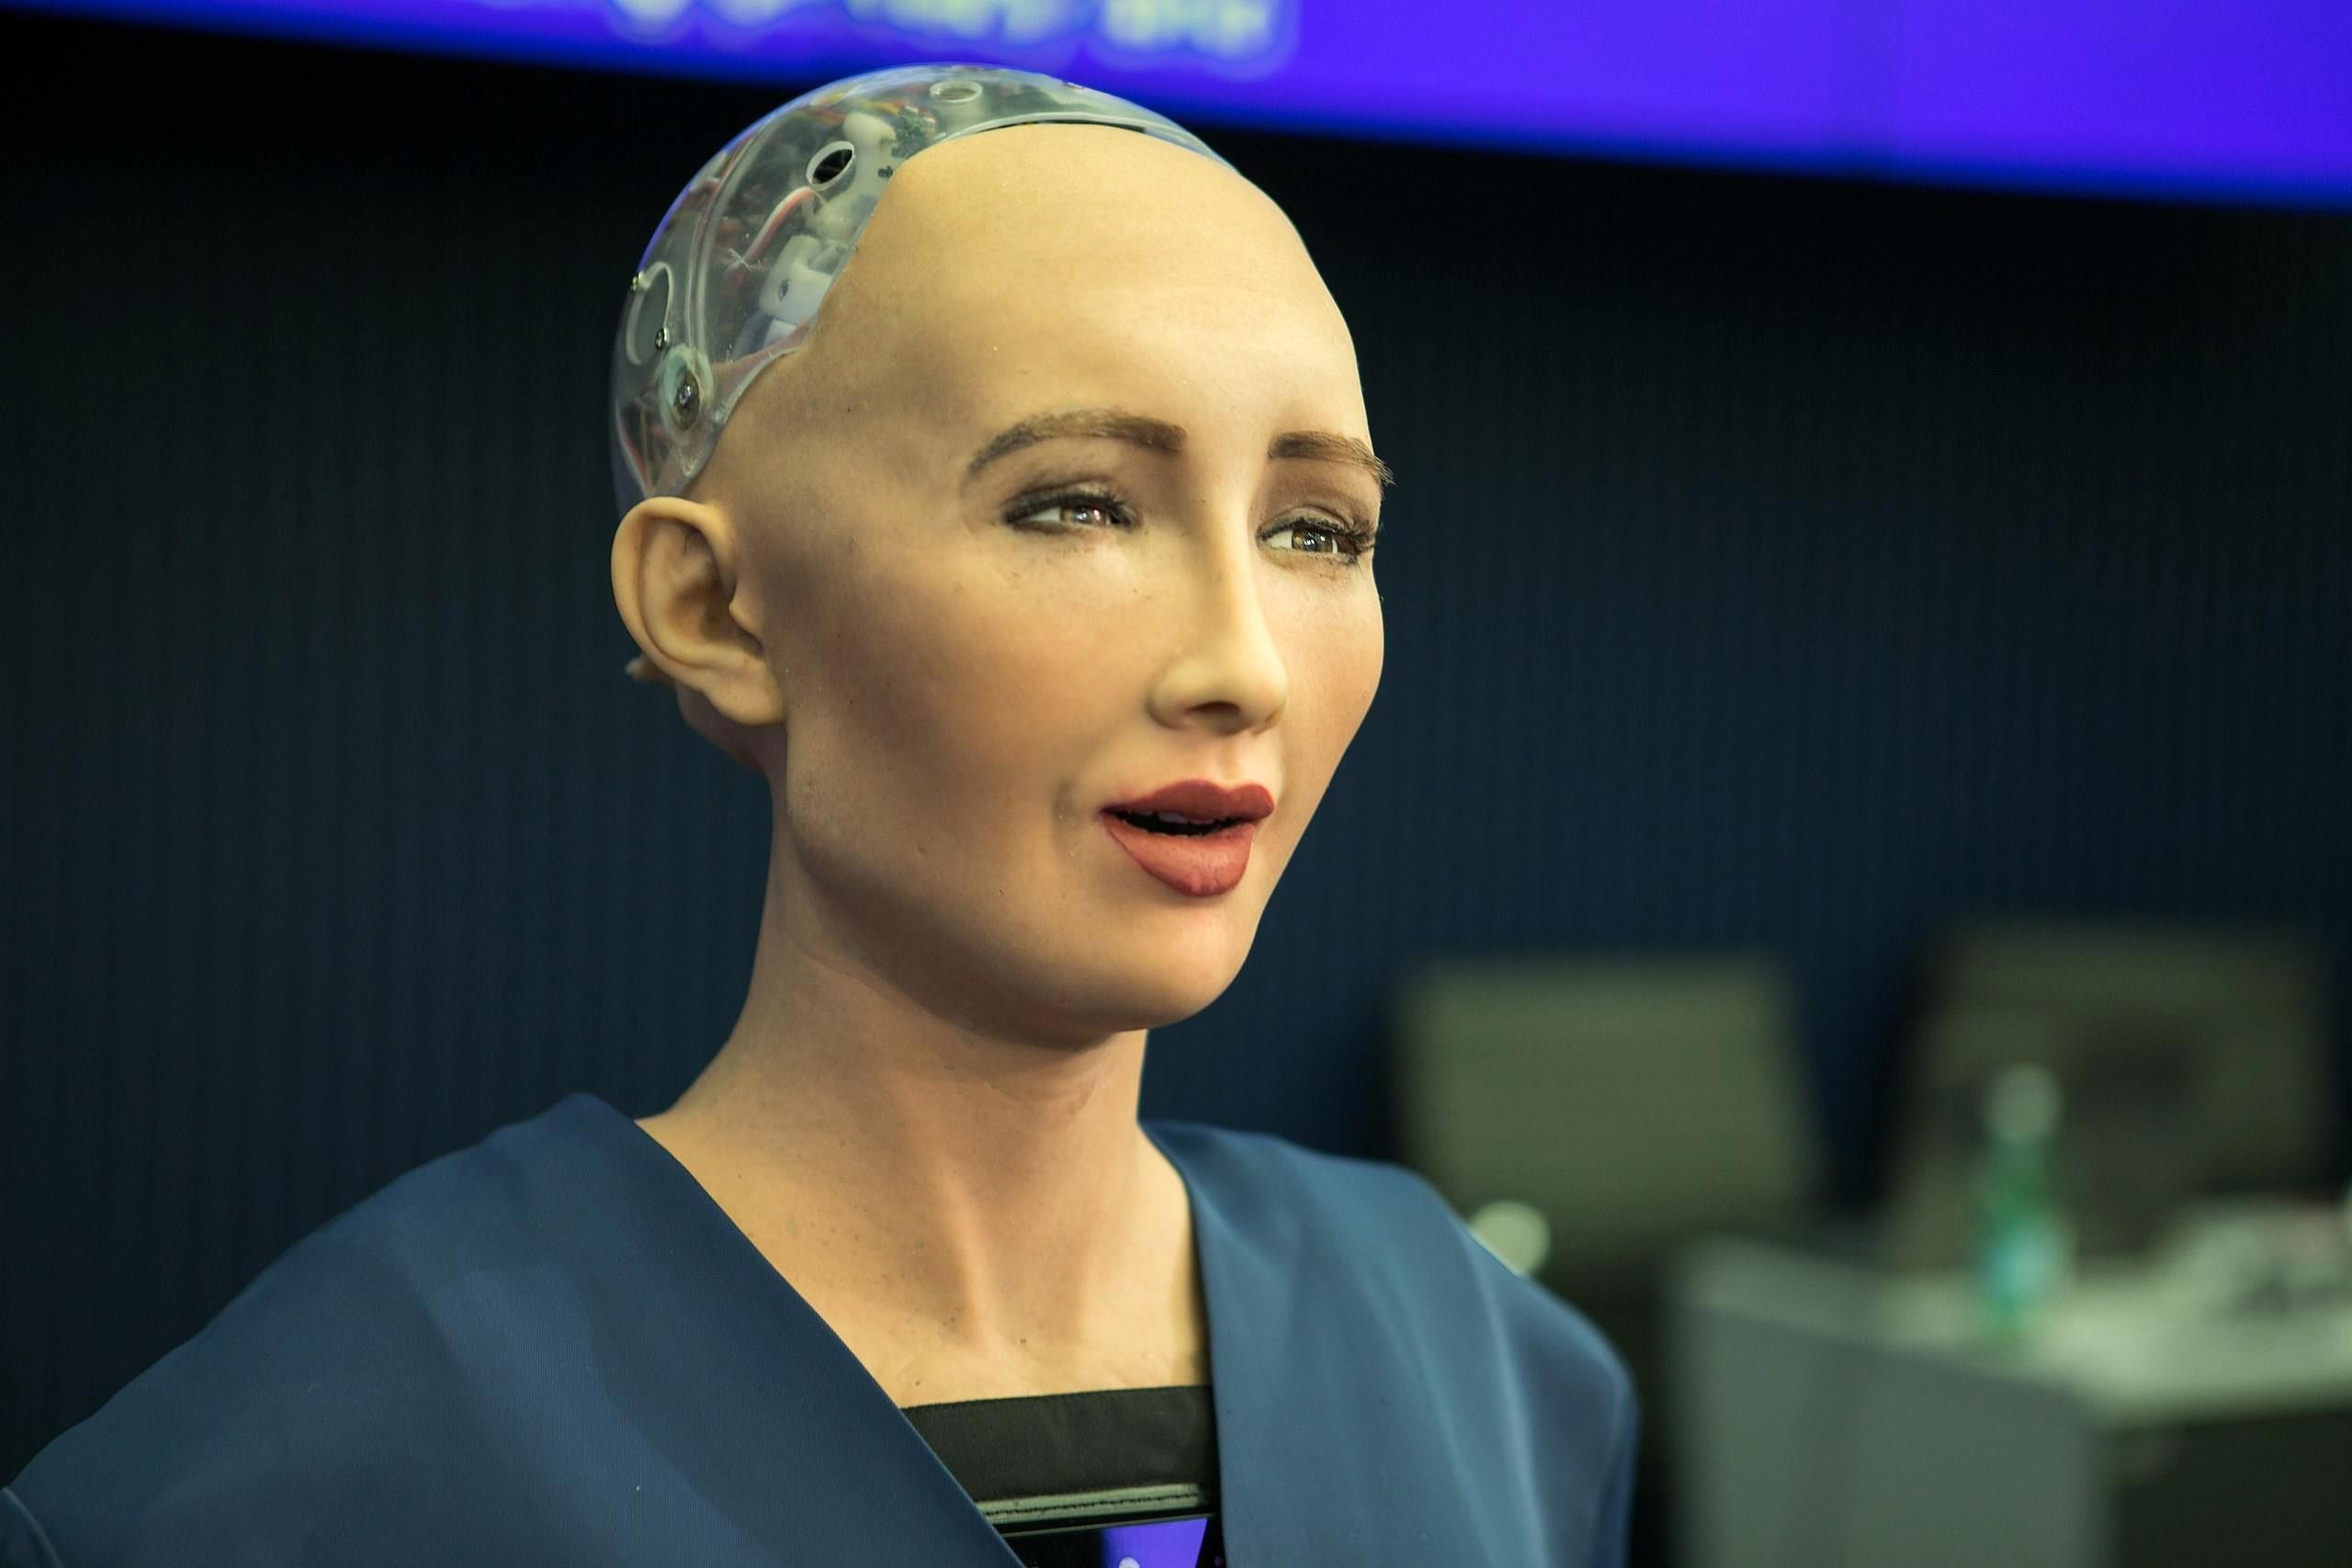 Robot Sophia aldatmaca mı yoksa gerçek mi? İşte Sophia’nın gerçek yüzü